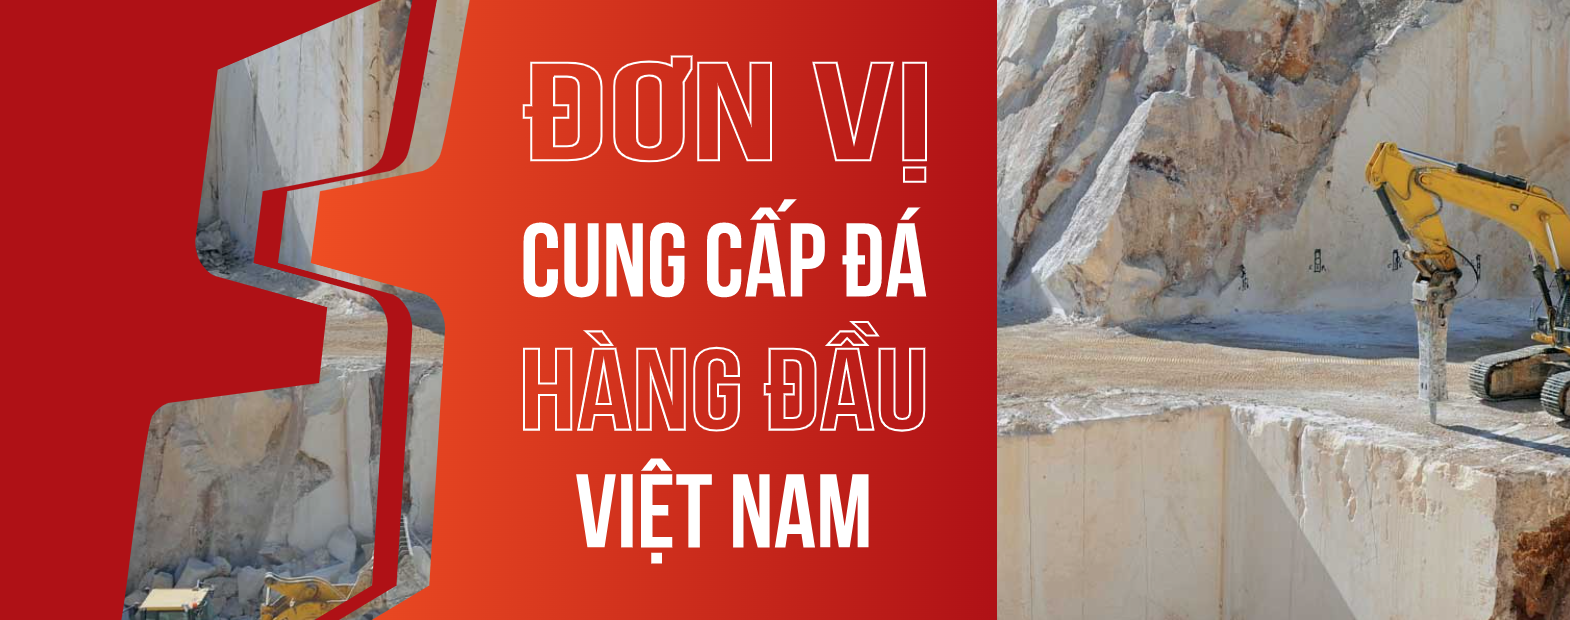 HSStone nhà thầu thi công đá hàng đầu Việt Nam